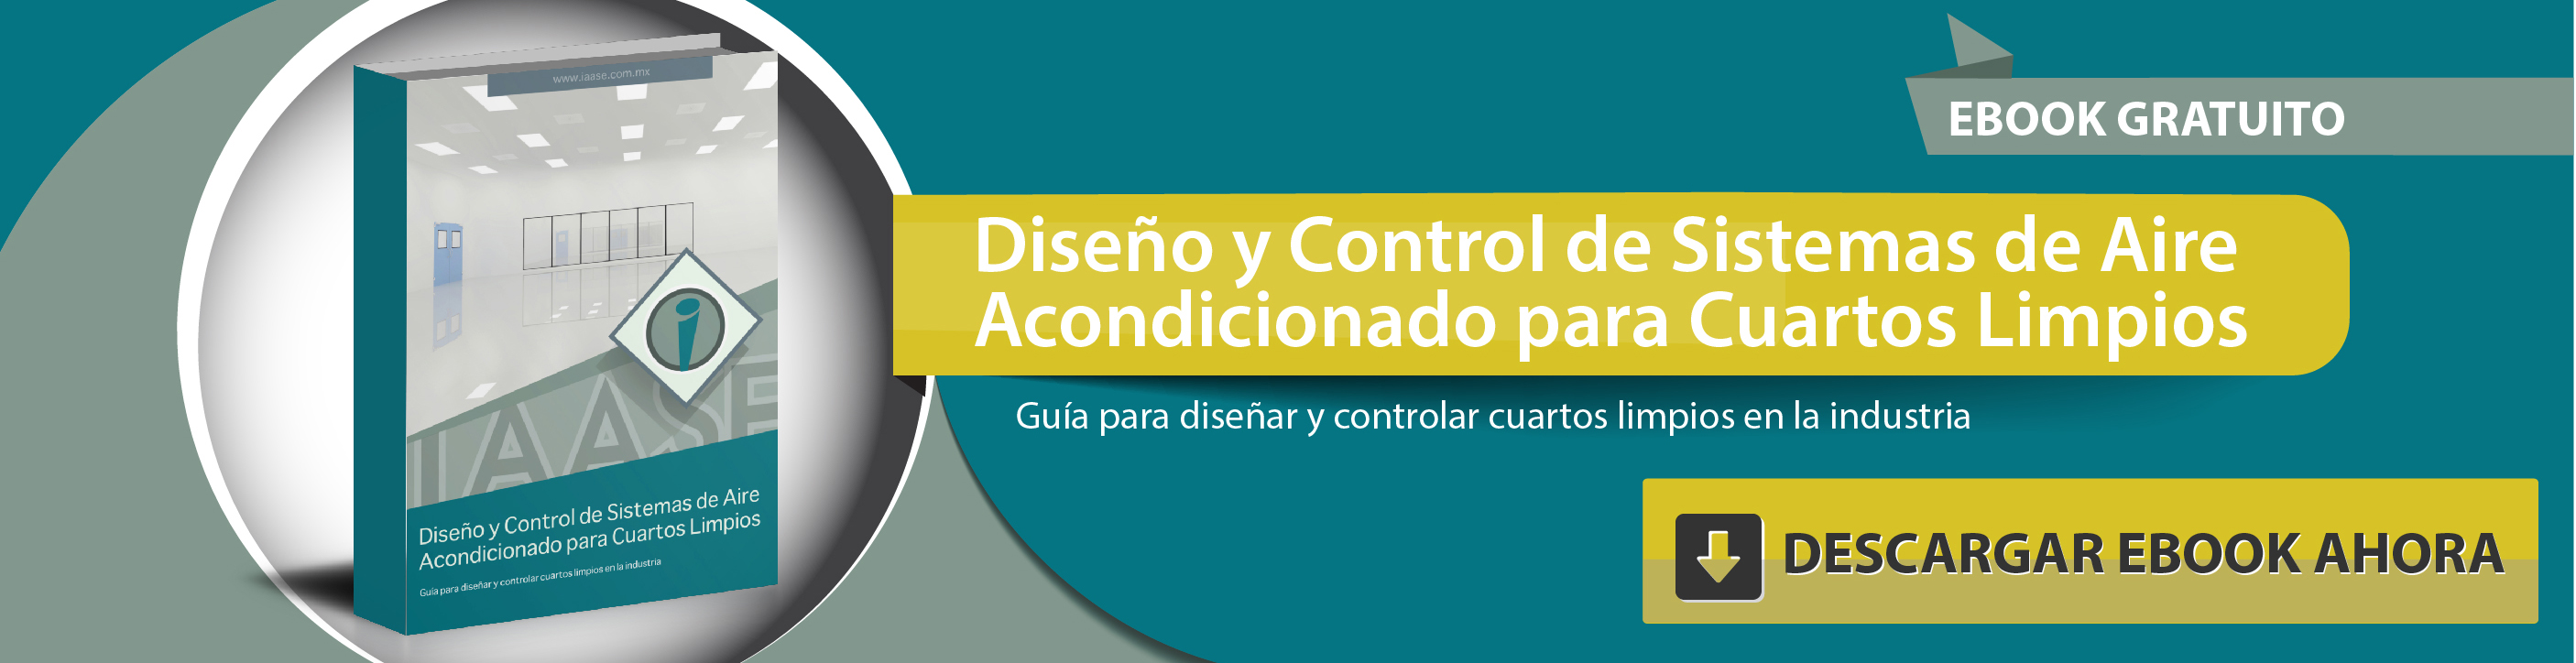 Diseño y Control de Sistemas de Aire Acondicionado para Cuartos Limpios.